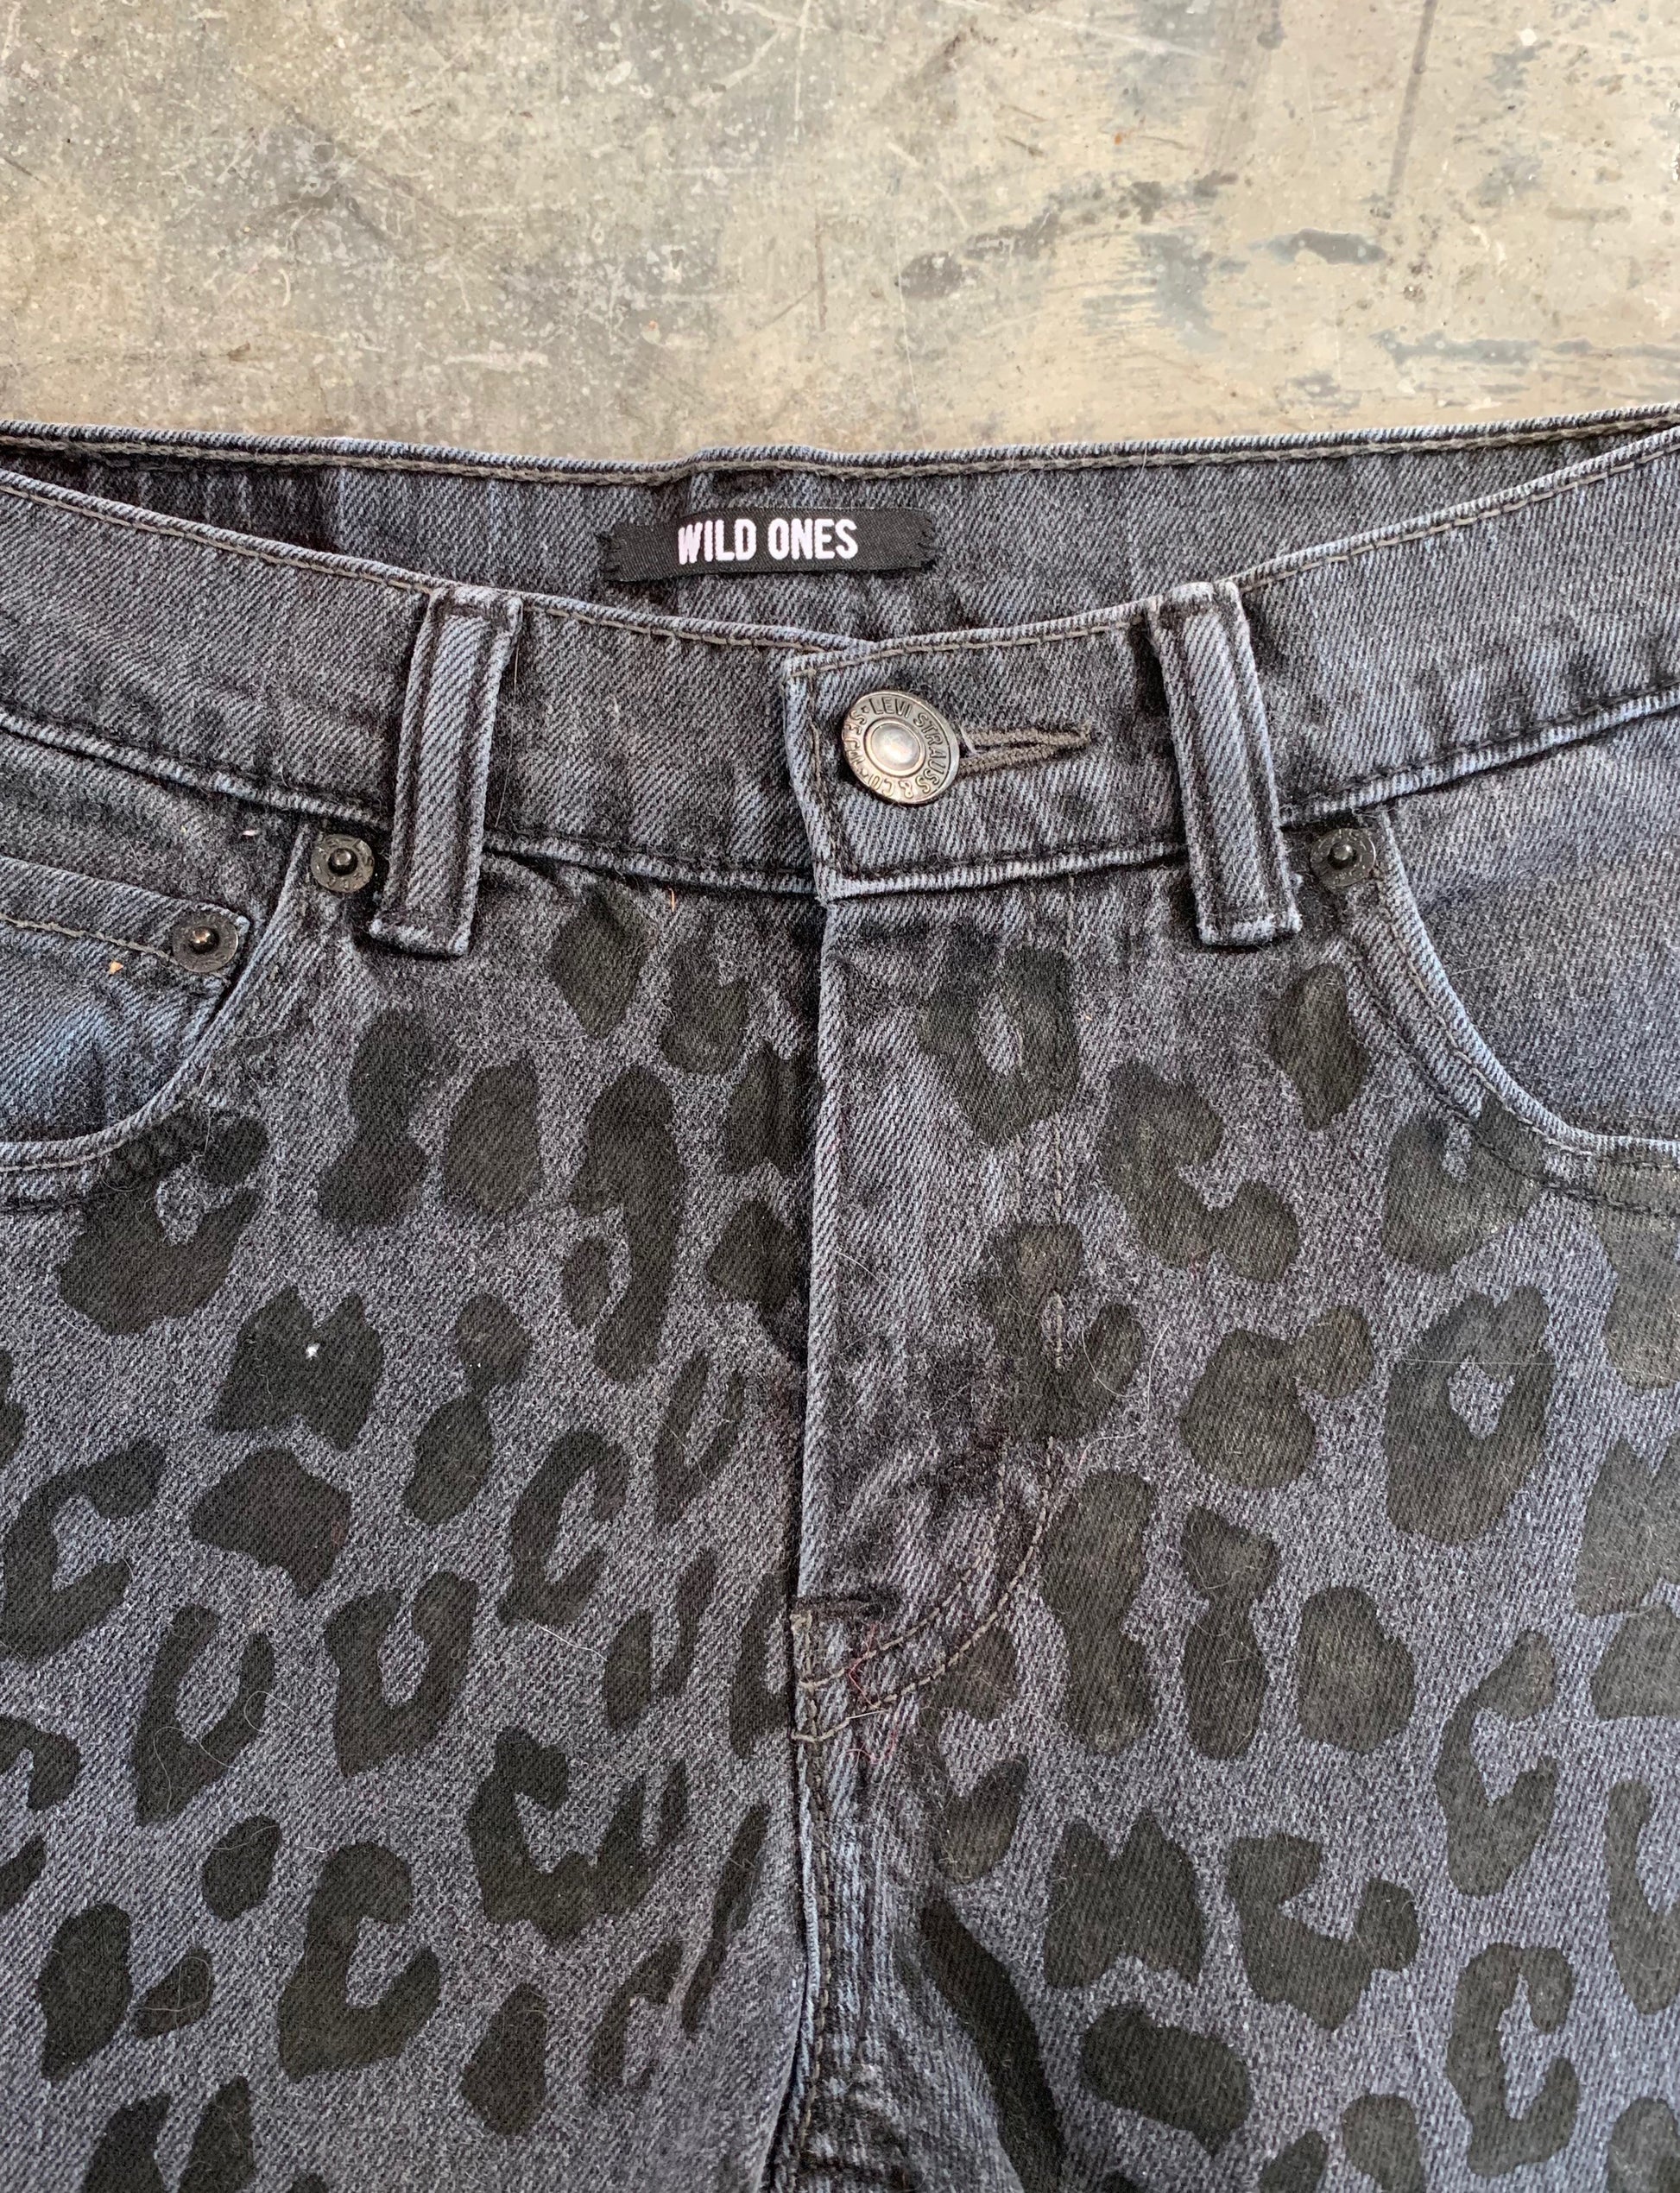 Wild Ones Women's Black Leopard Levis Cut Off Jean Shorts Size 27W 